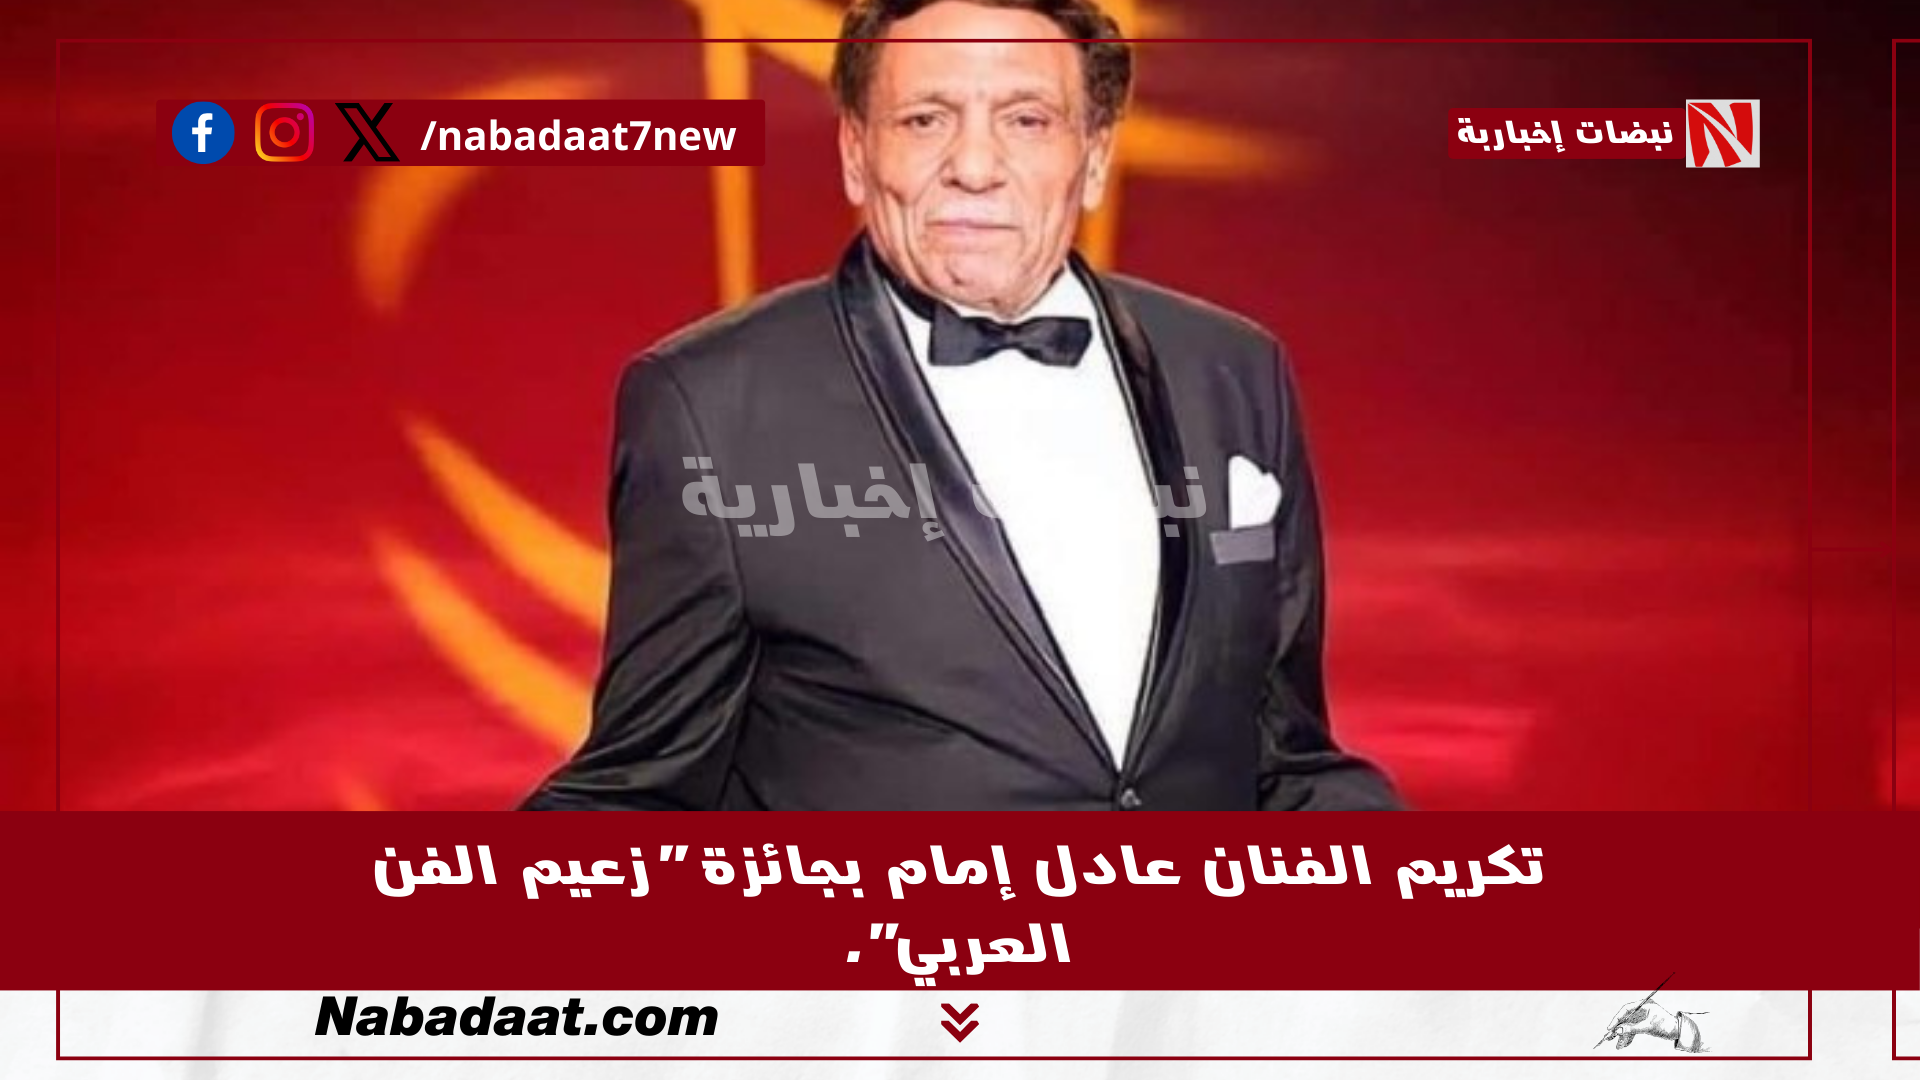 تكريم الفنان عادل إمام بجائزة "زعيم الفن العربي".